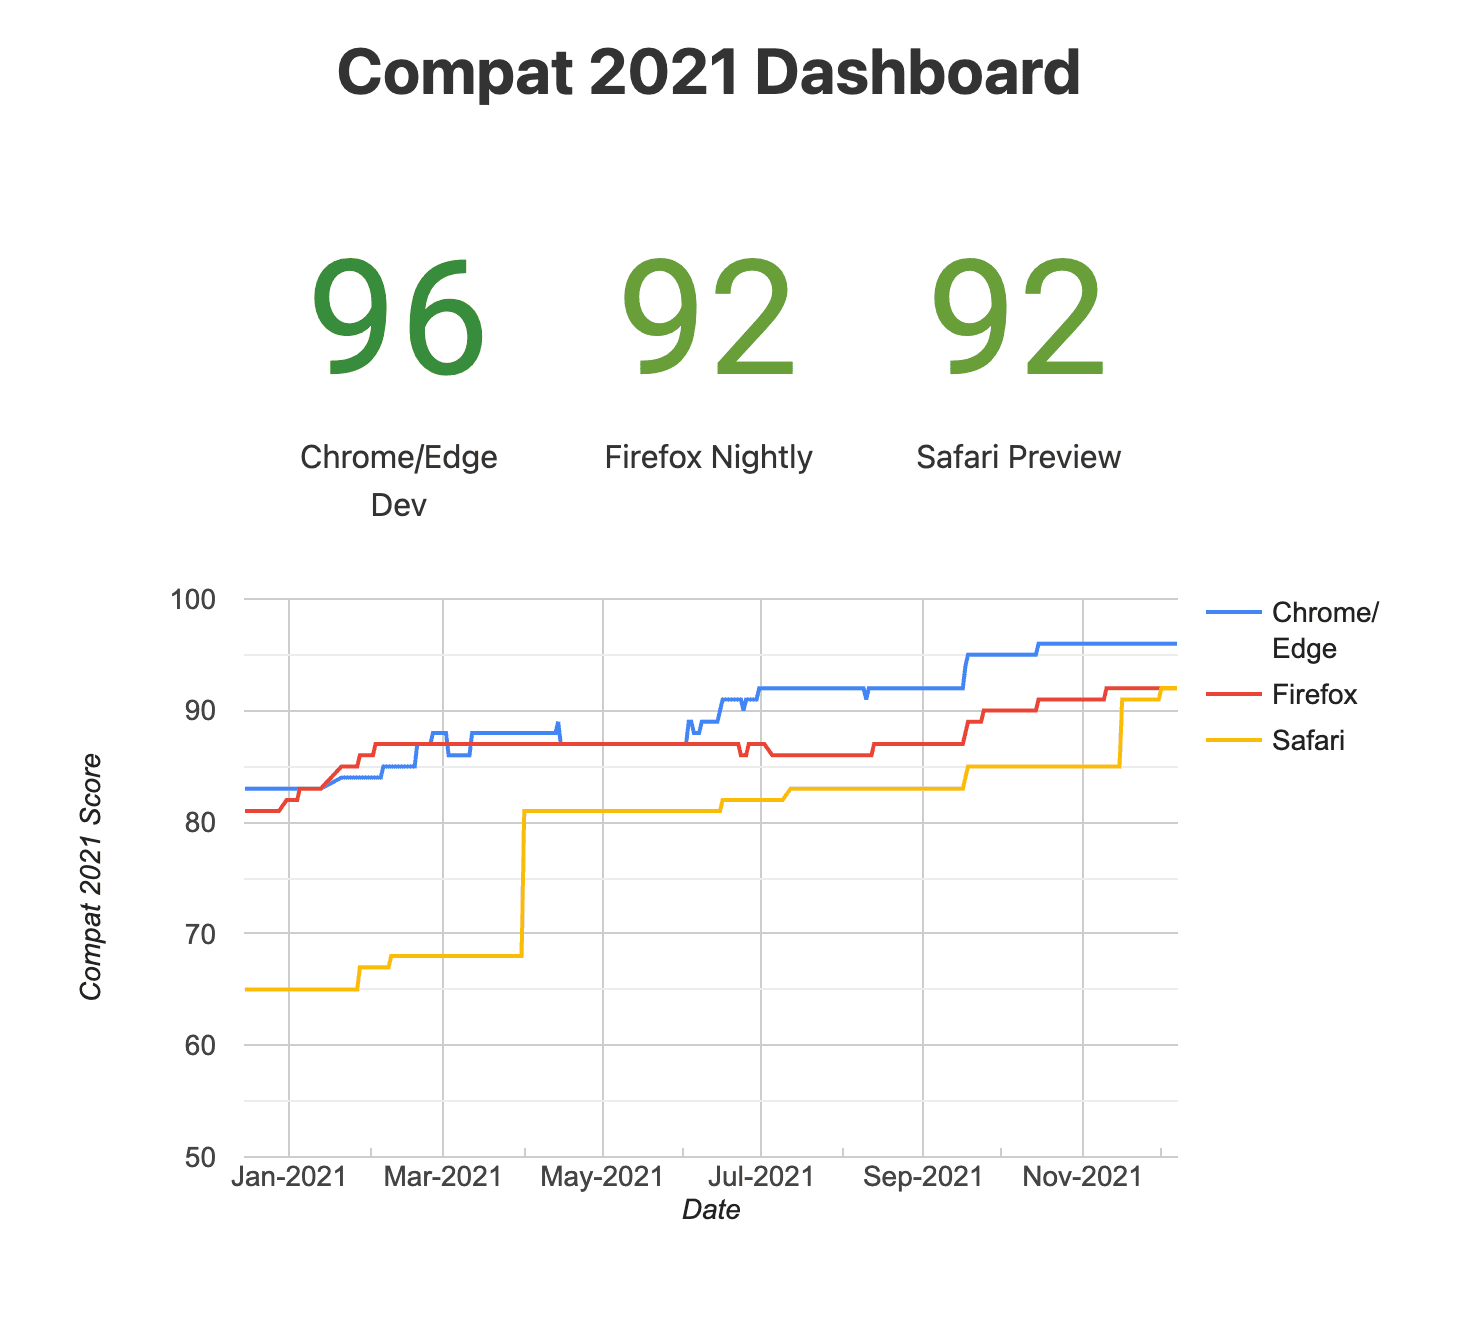 لقطة شاشة من Compat
لوحة البيانات لعام 2021 (المتصفحات التجريبية)